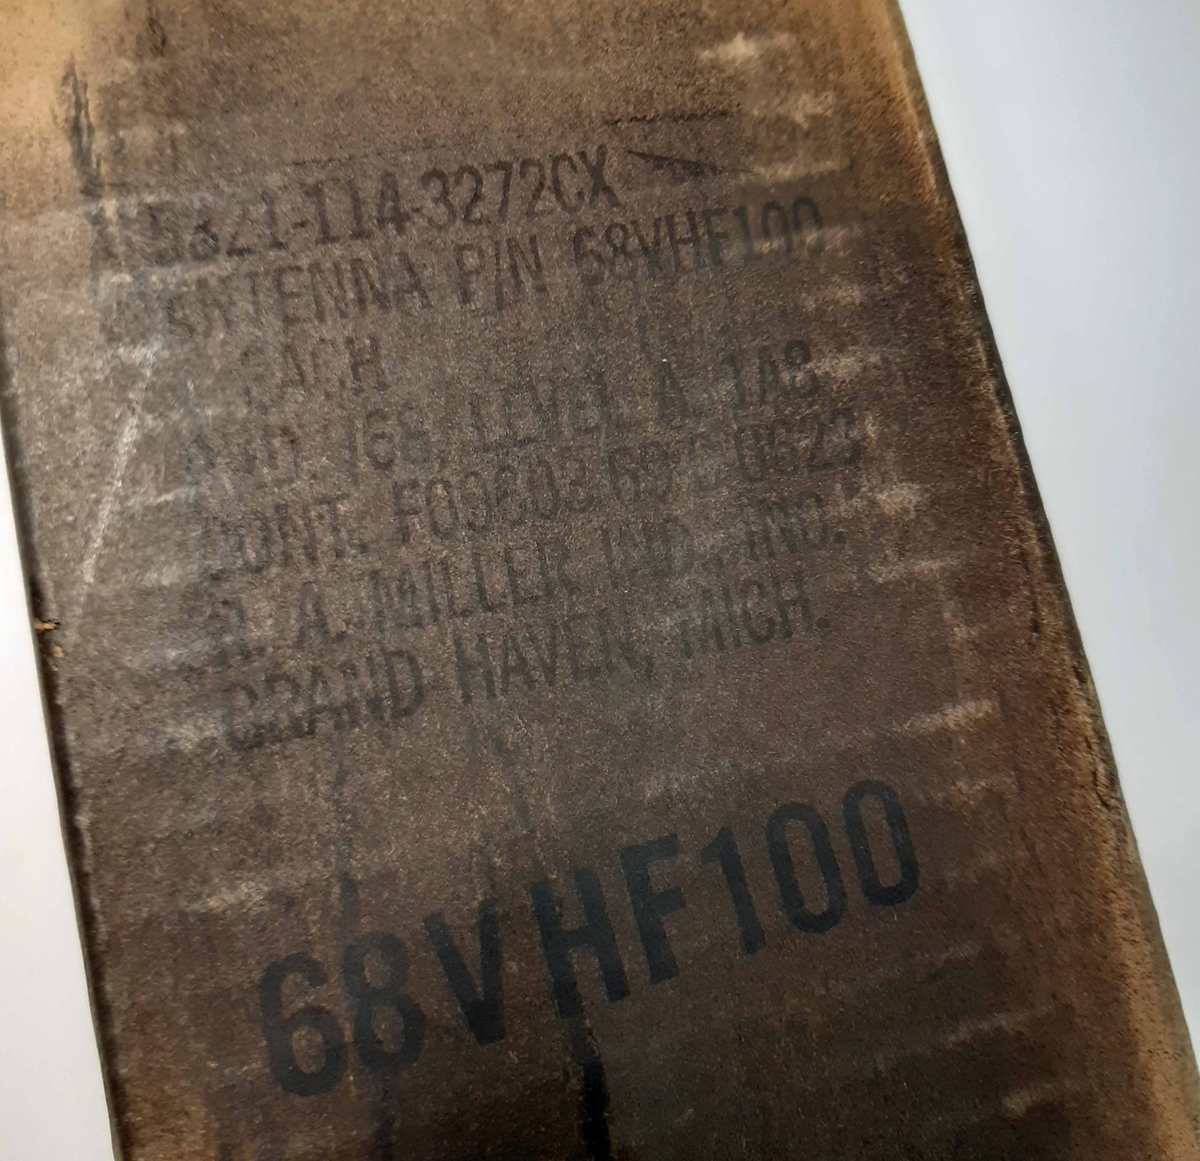 Antenn, AN 104 B, svartlackerad med svart gummering. På sidan märkt: "R. A. MILLER INDUSTRIES. INC. Grand Haven Mich."
Förvaras i originalförpackning av kartong, datum-märkt: 24/8 1970.
